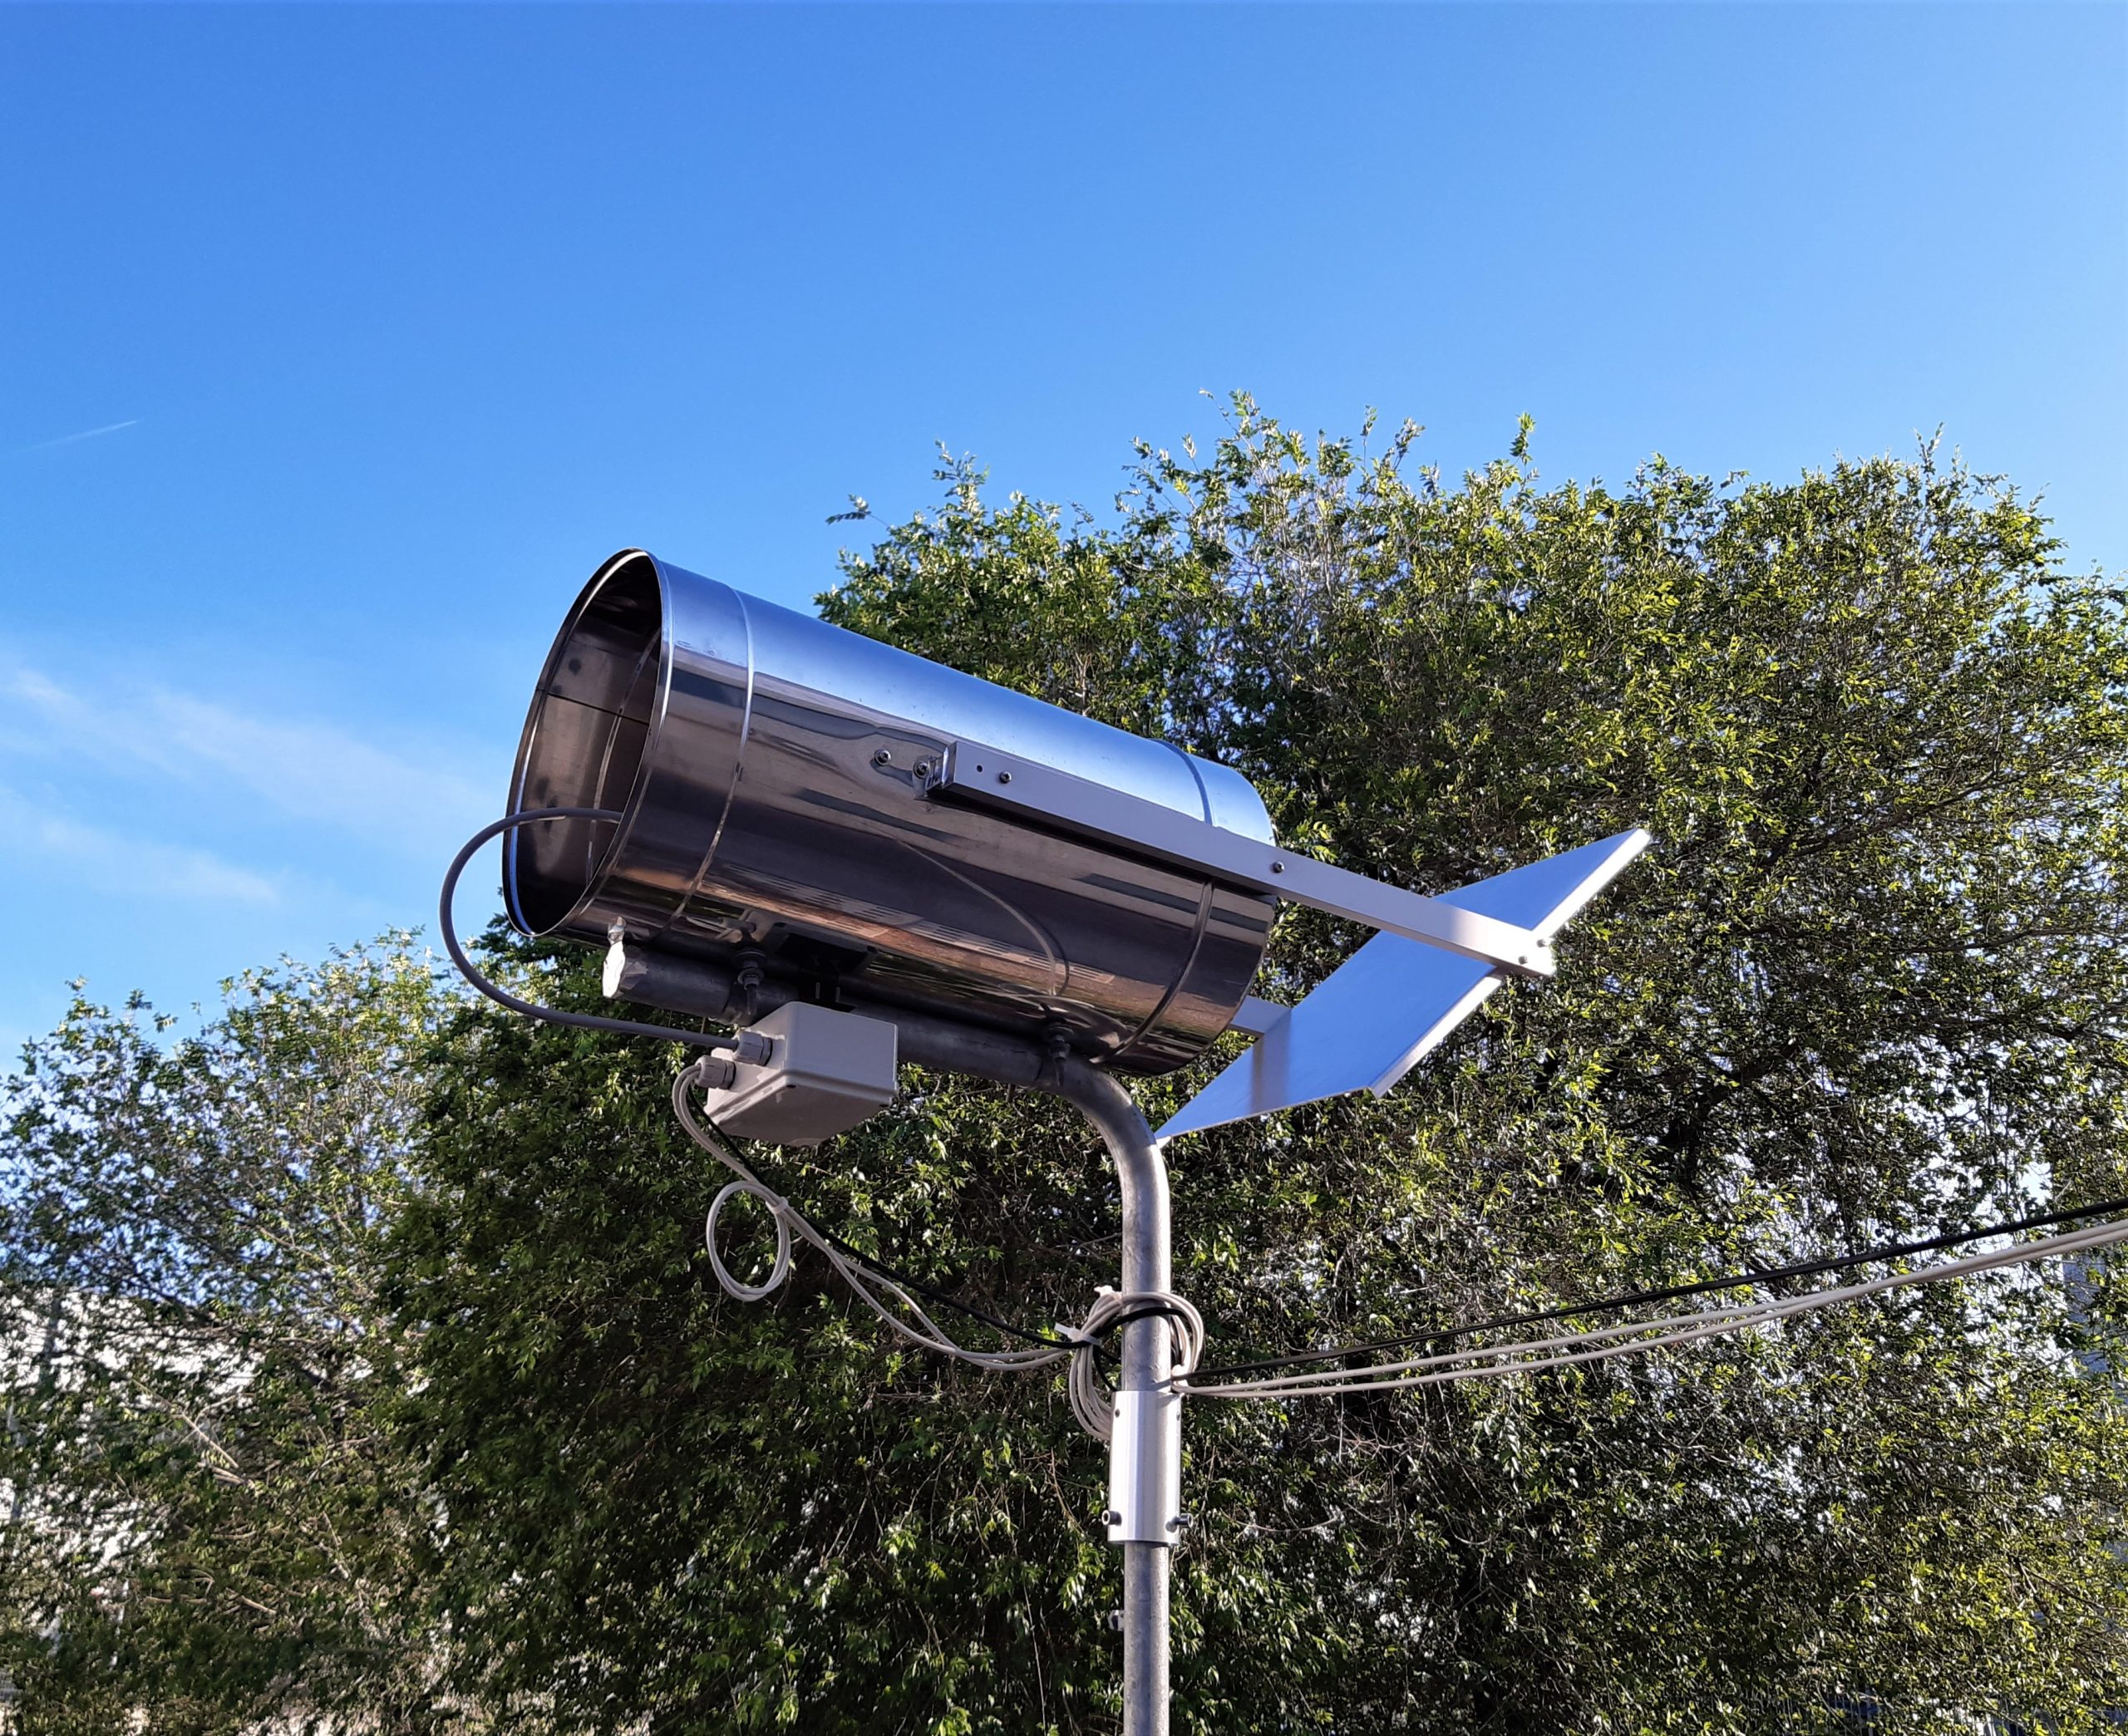 Prototipo RALtropo: si tratta di un ricevitore a microonde (radiometro operante nella banda di frequenze da 10 a 12 GHz) dedicato al monitoraggio continuo dell'atmosfera allo zenit. Lo strumento misura la temperatura di brillanza del cielo, la temperatura dell'aria e stima l'intensità delle precipitazioni piovose locali.